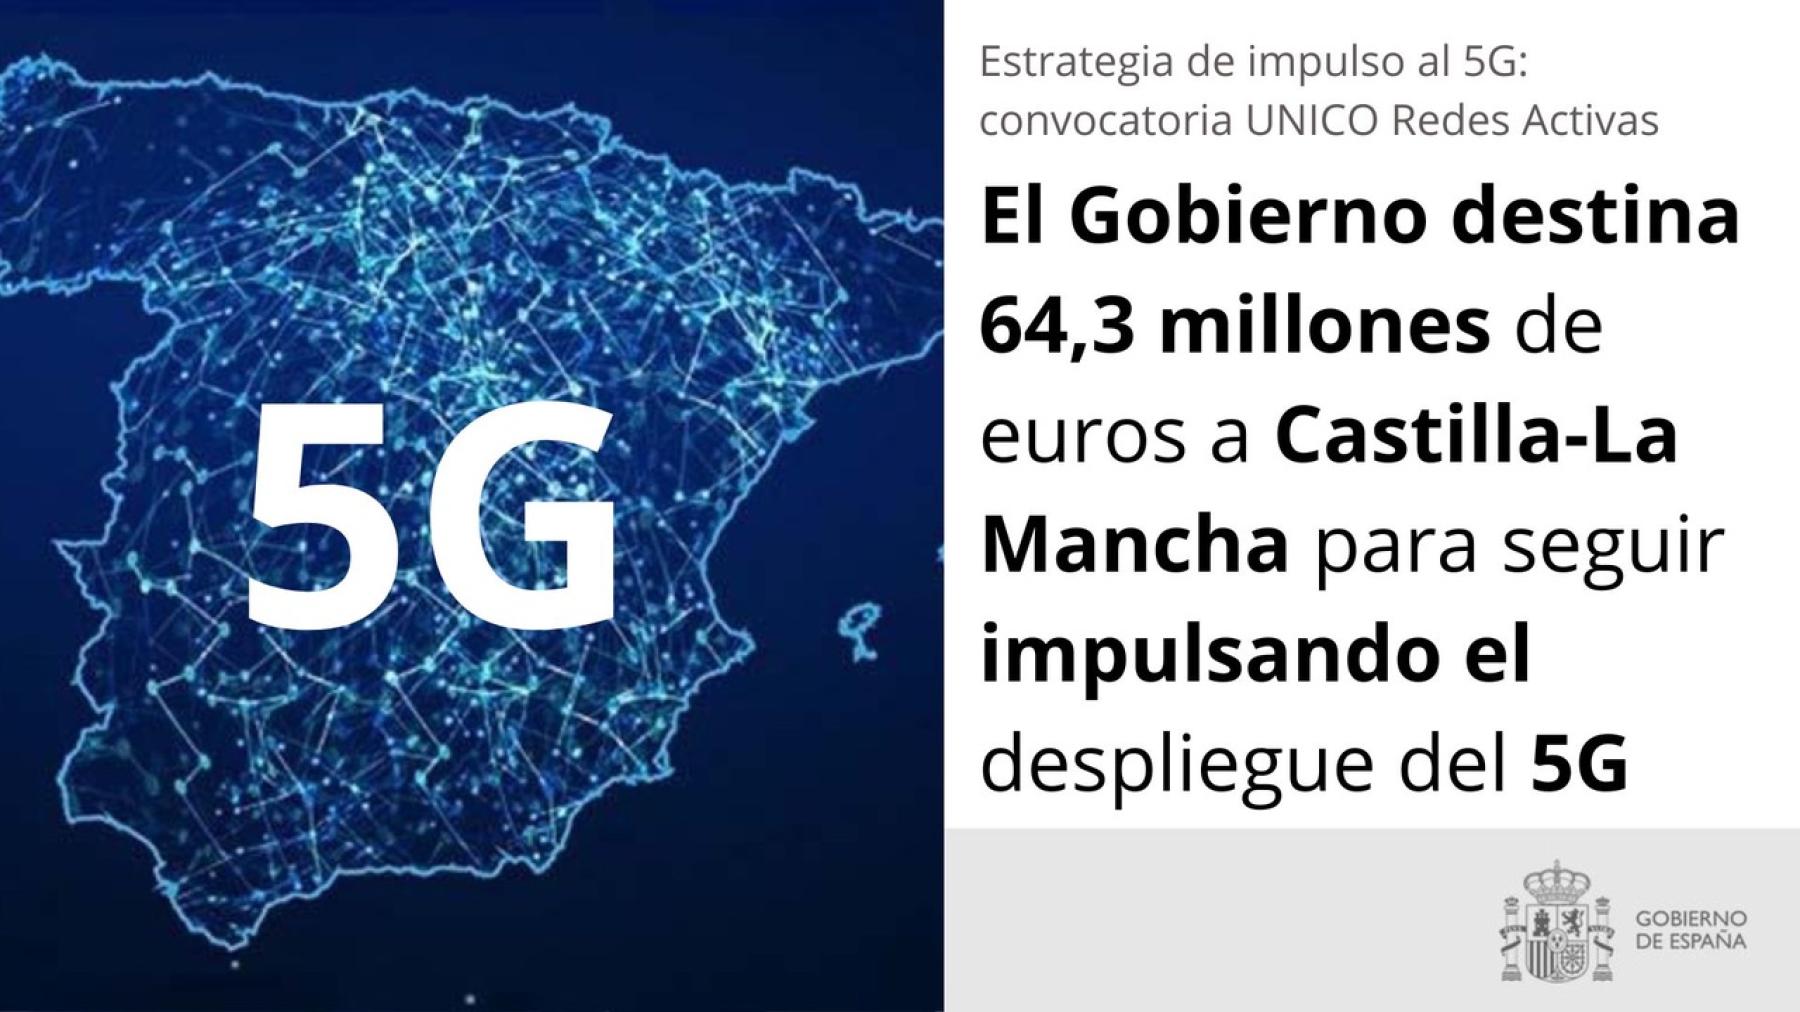 El Gobierno destina 64,3 millones de euros a Castilla-La Mancha para seguir impulsando el despliegue del 5G